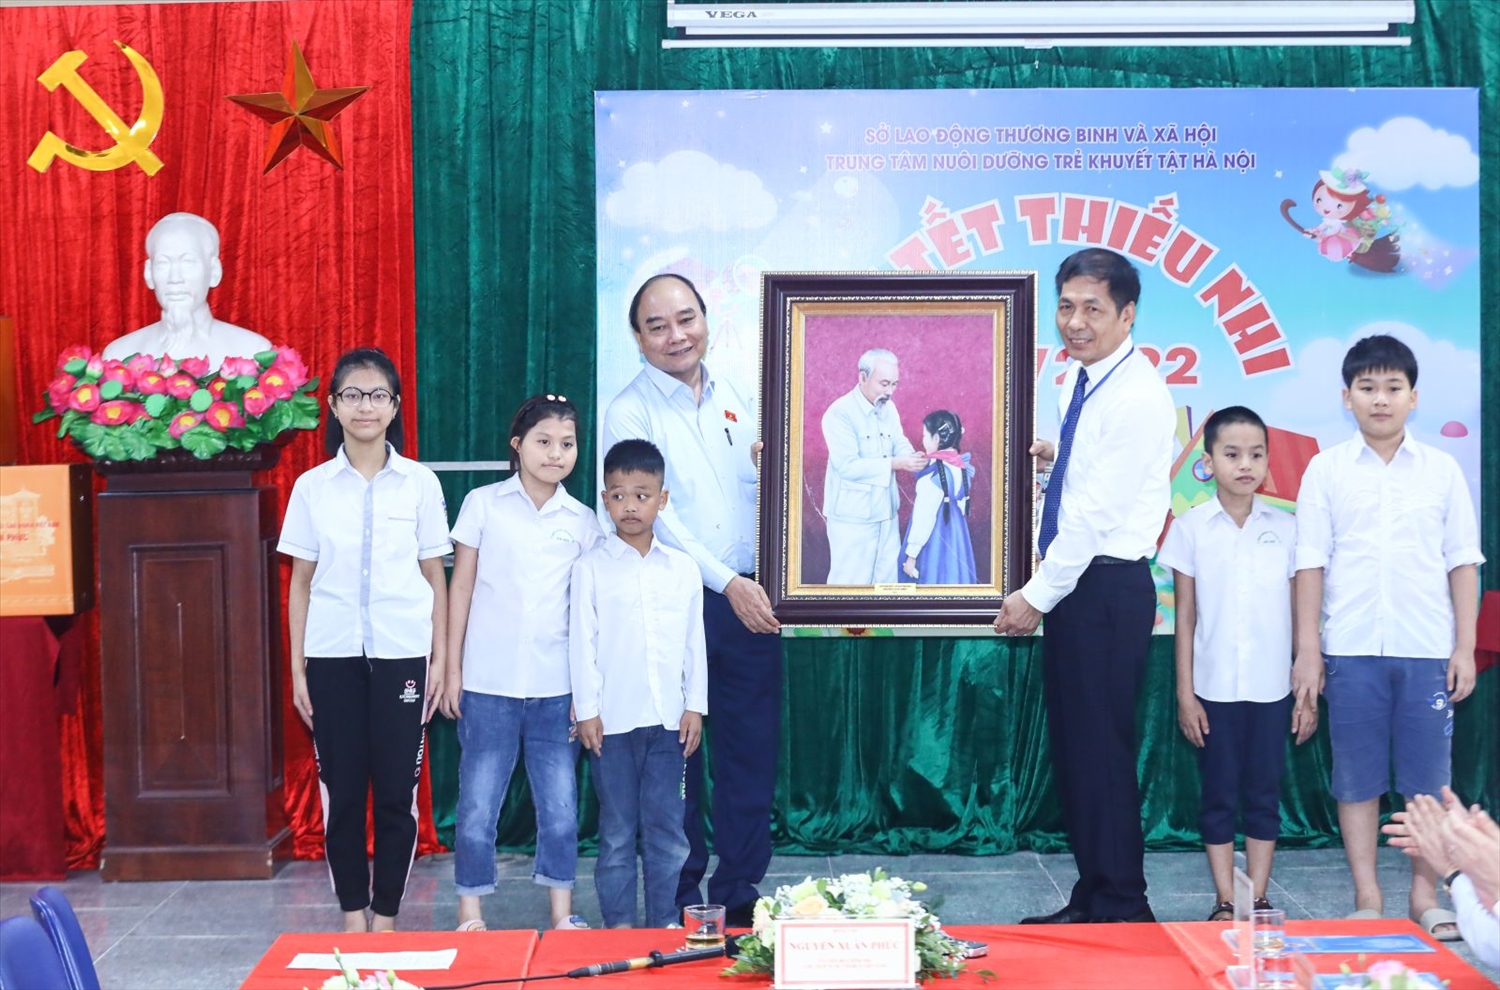  Chủ tịch nước Nguyễn Xuân Phúc tặng tranh Chủ tịch Hồ Chí Minh với thiếu nhi cho Trung tâm Nuôi dưỡng trẻ khuyết tật Hà Nội. Ảnh: VPCTN